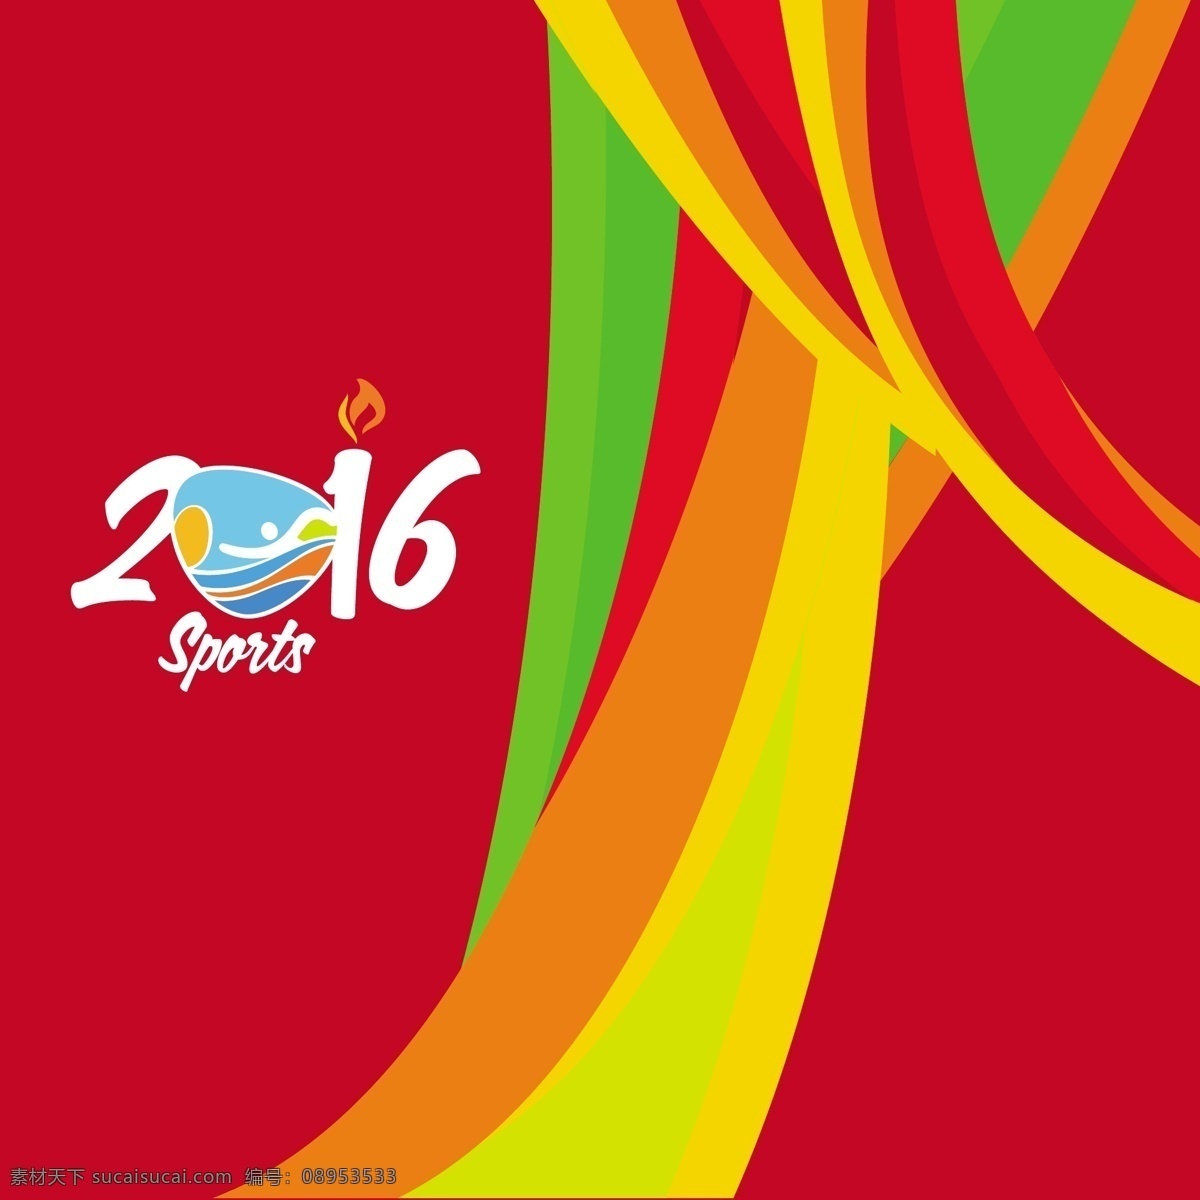 体育2016 奥运会 背景 摘要背景 摘要 夏季 体育 健身 波浪 健康 造型 壁纸 事件 色彩 2016 装饰 现代 运动 锻炼 丰富的背景